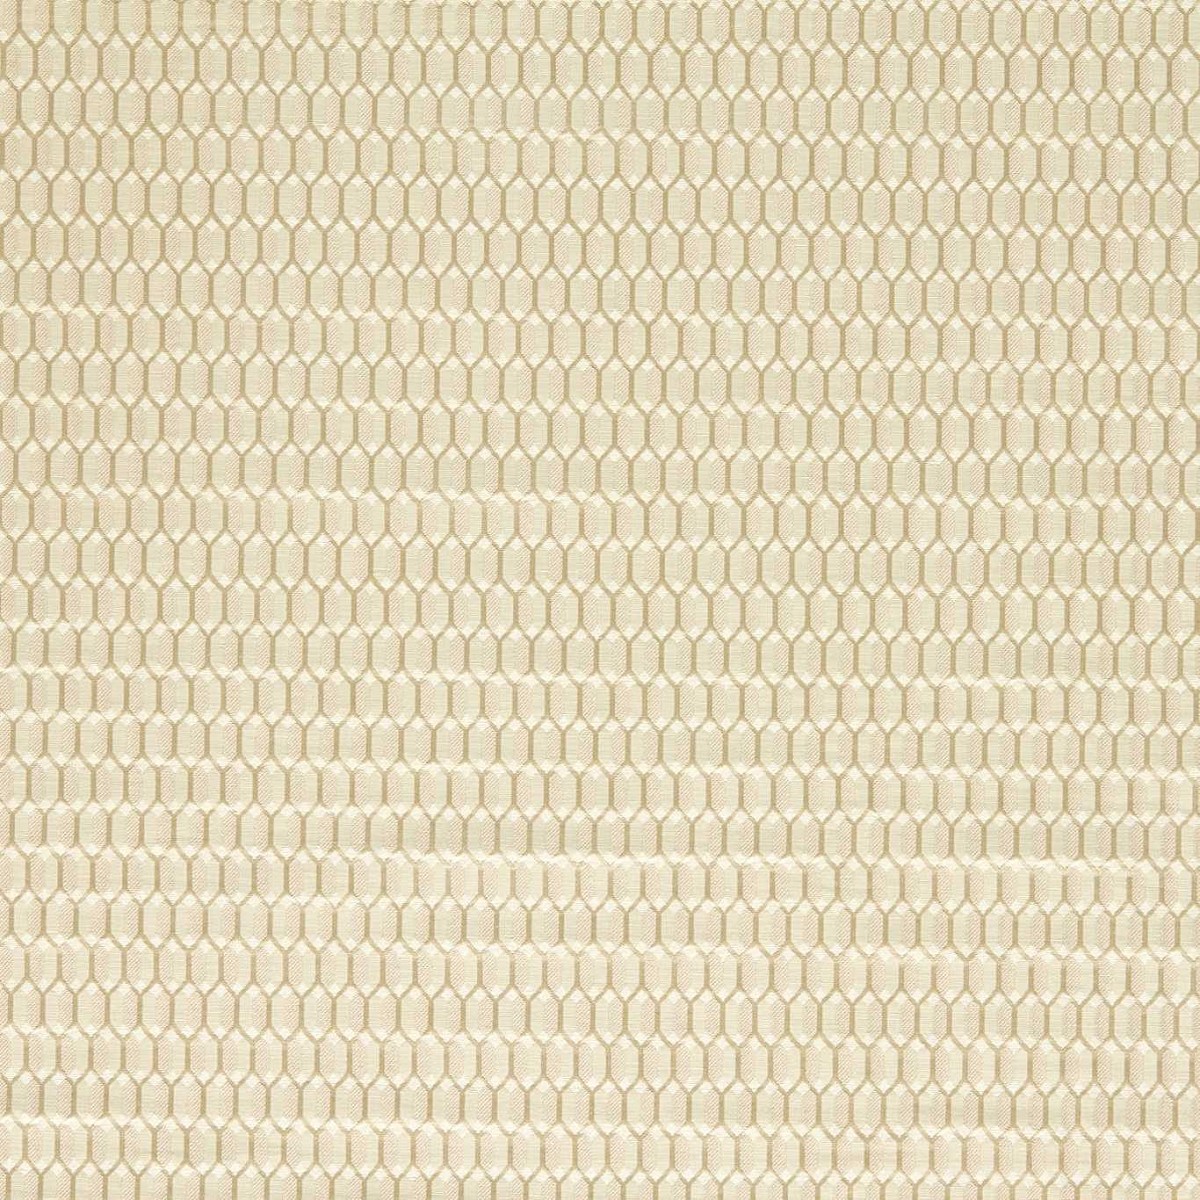 Domino Trellis Paris Grey Fabric by Zoffany